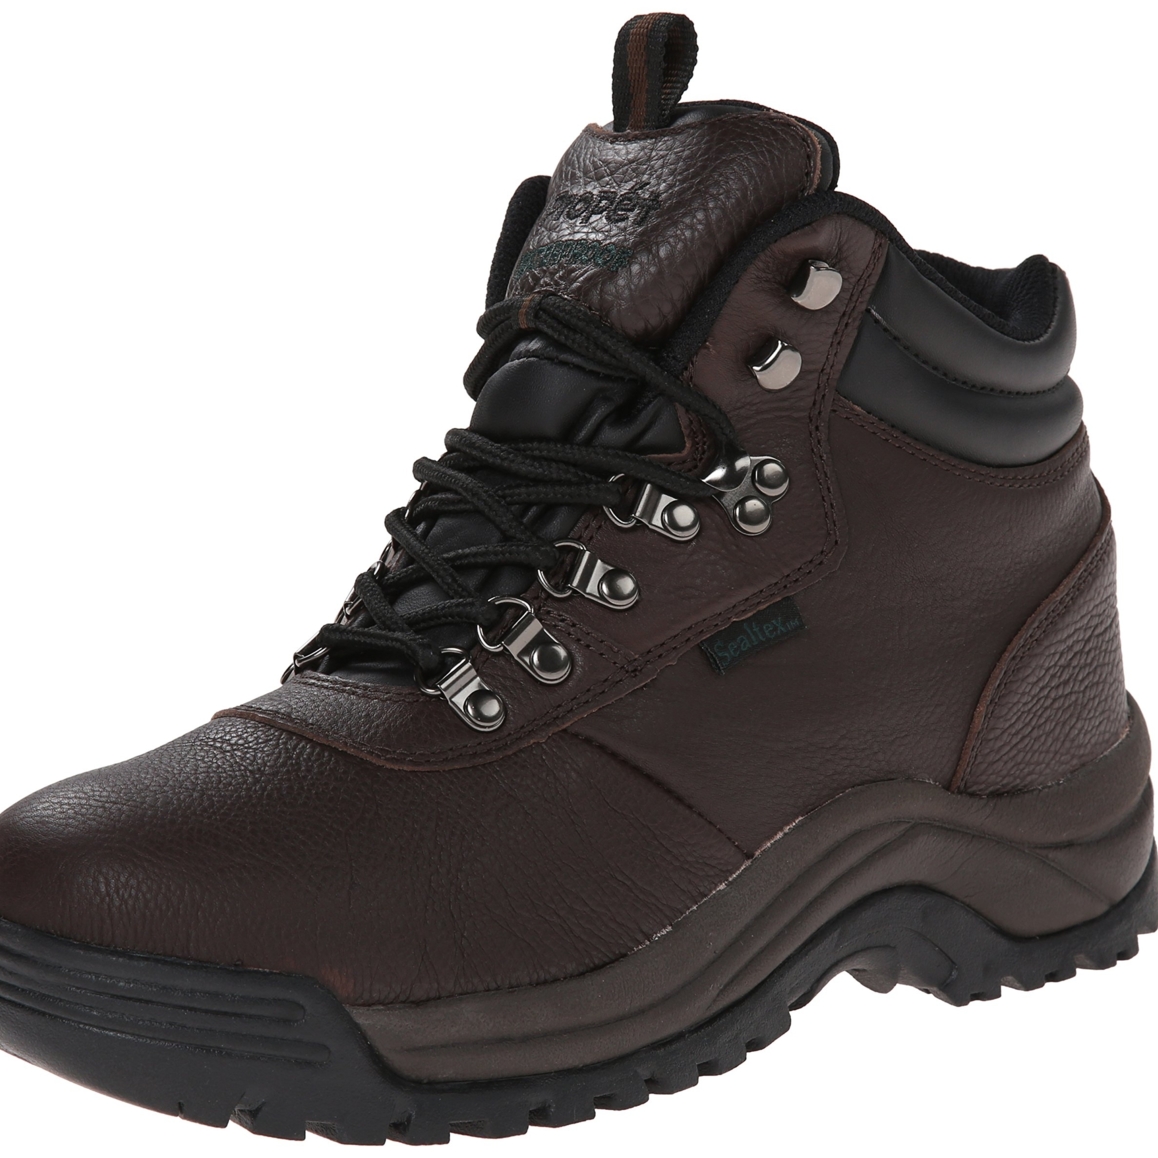 Propet Men's Cliff Walker Hiking Boot Bronco Brown - M3188BRO - BRONCO BROWN, 14-D